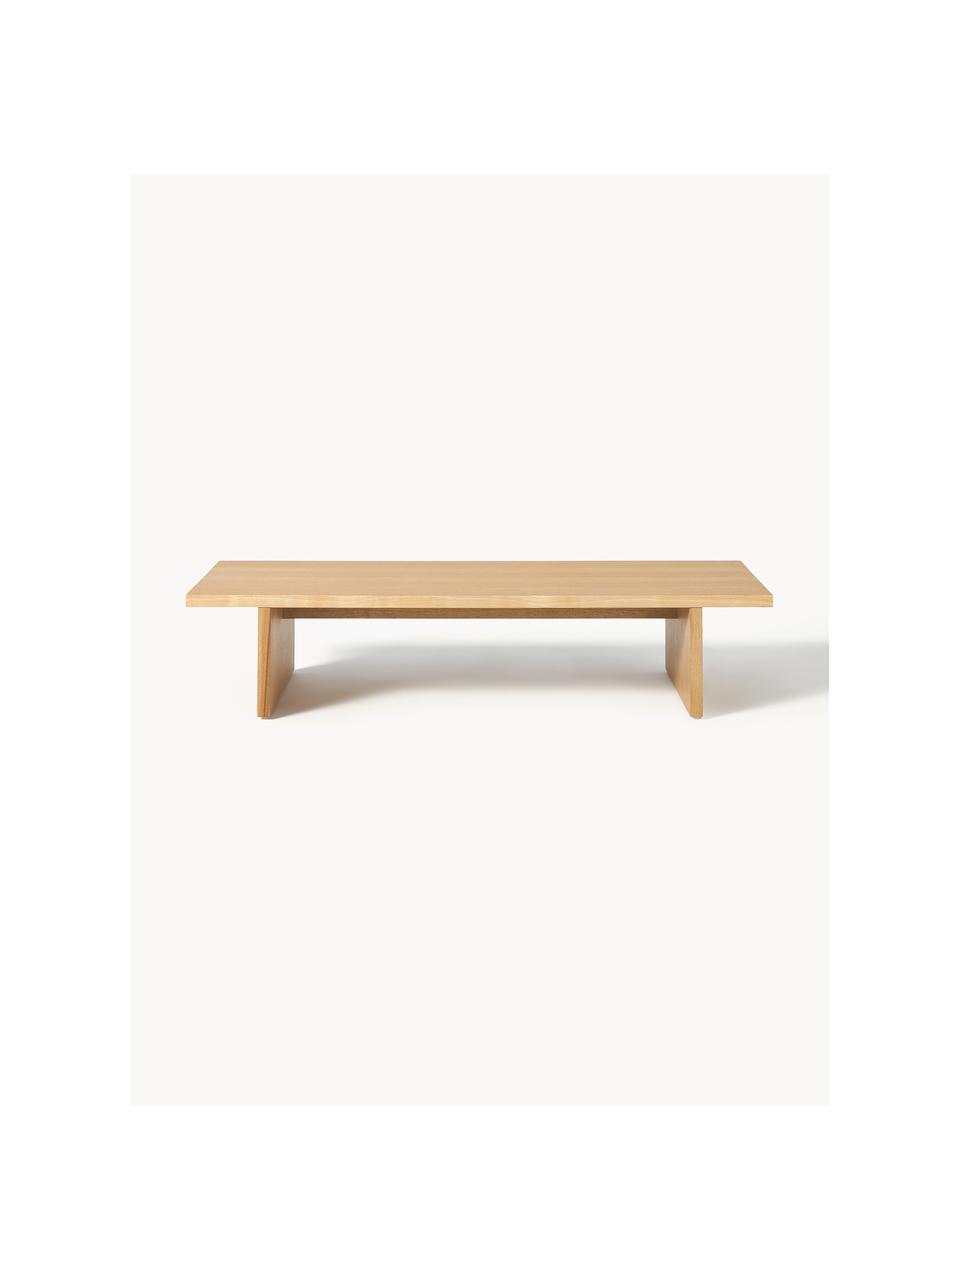 Tavolino basso da salotto in legno Toni, Pannello MDF (pannello di fibra a media densità) con finitura in legno di frassino laccato, Legno di frassino, Larg. 120 x Alt. 25 cm